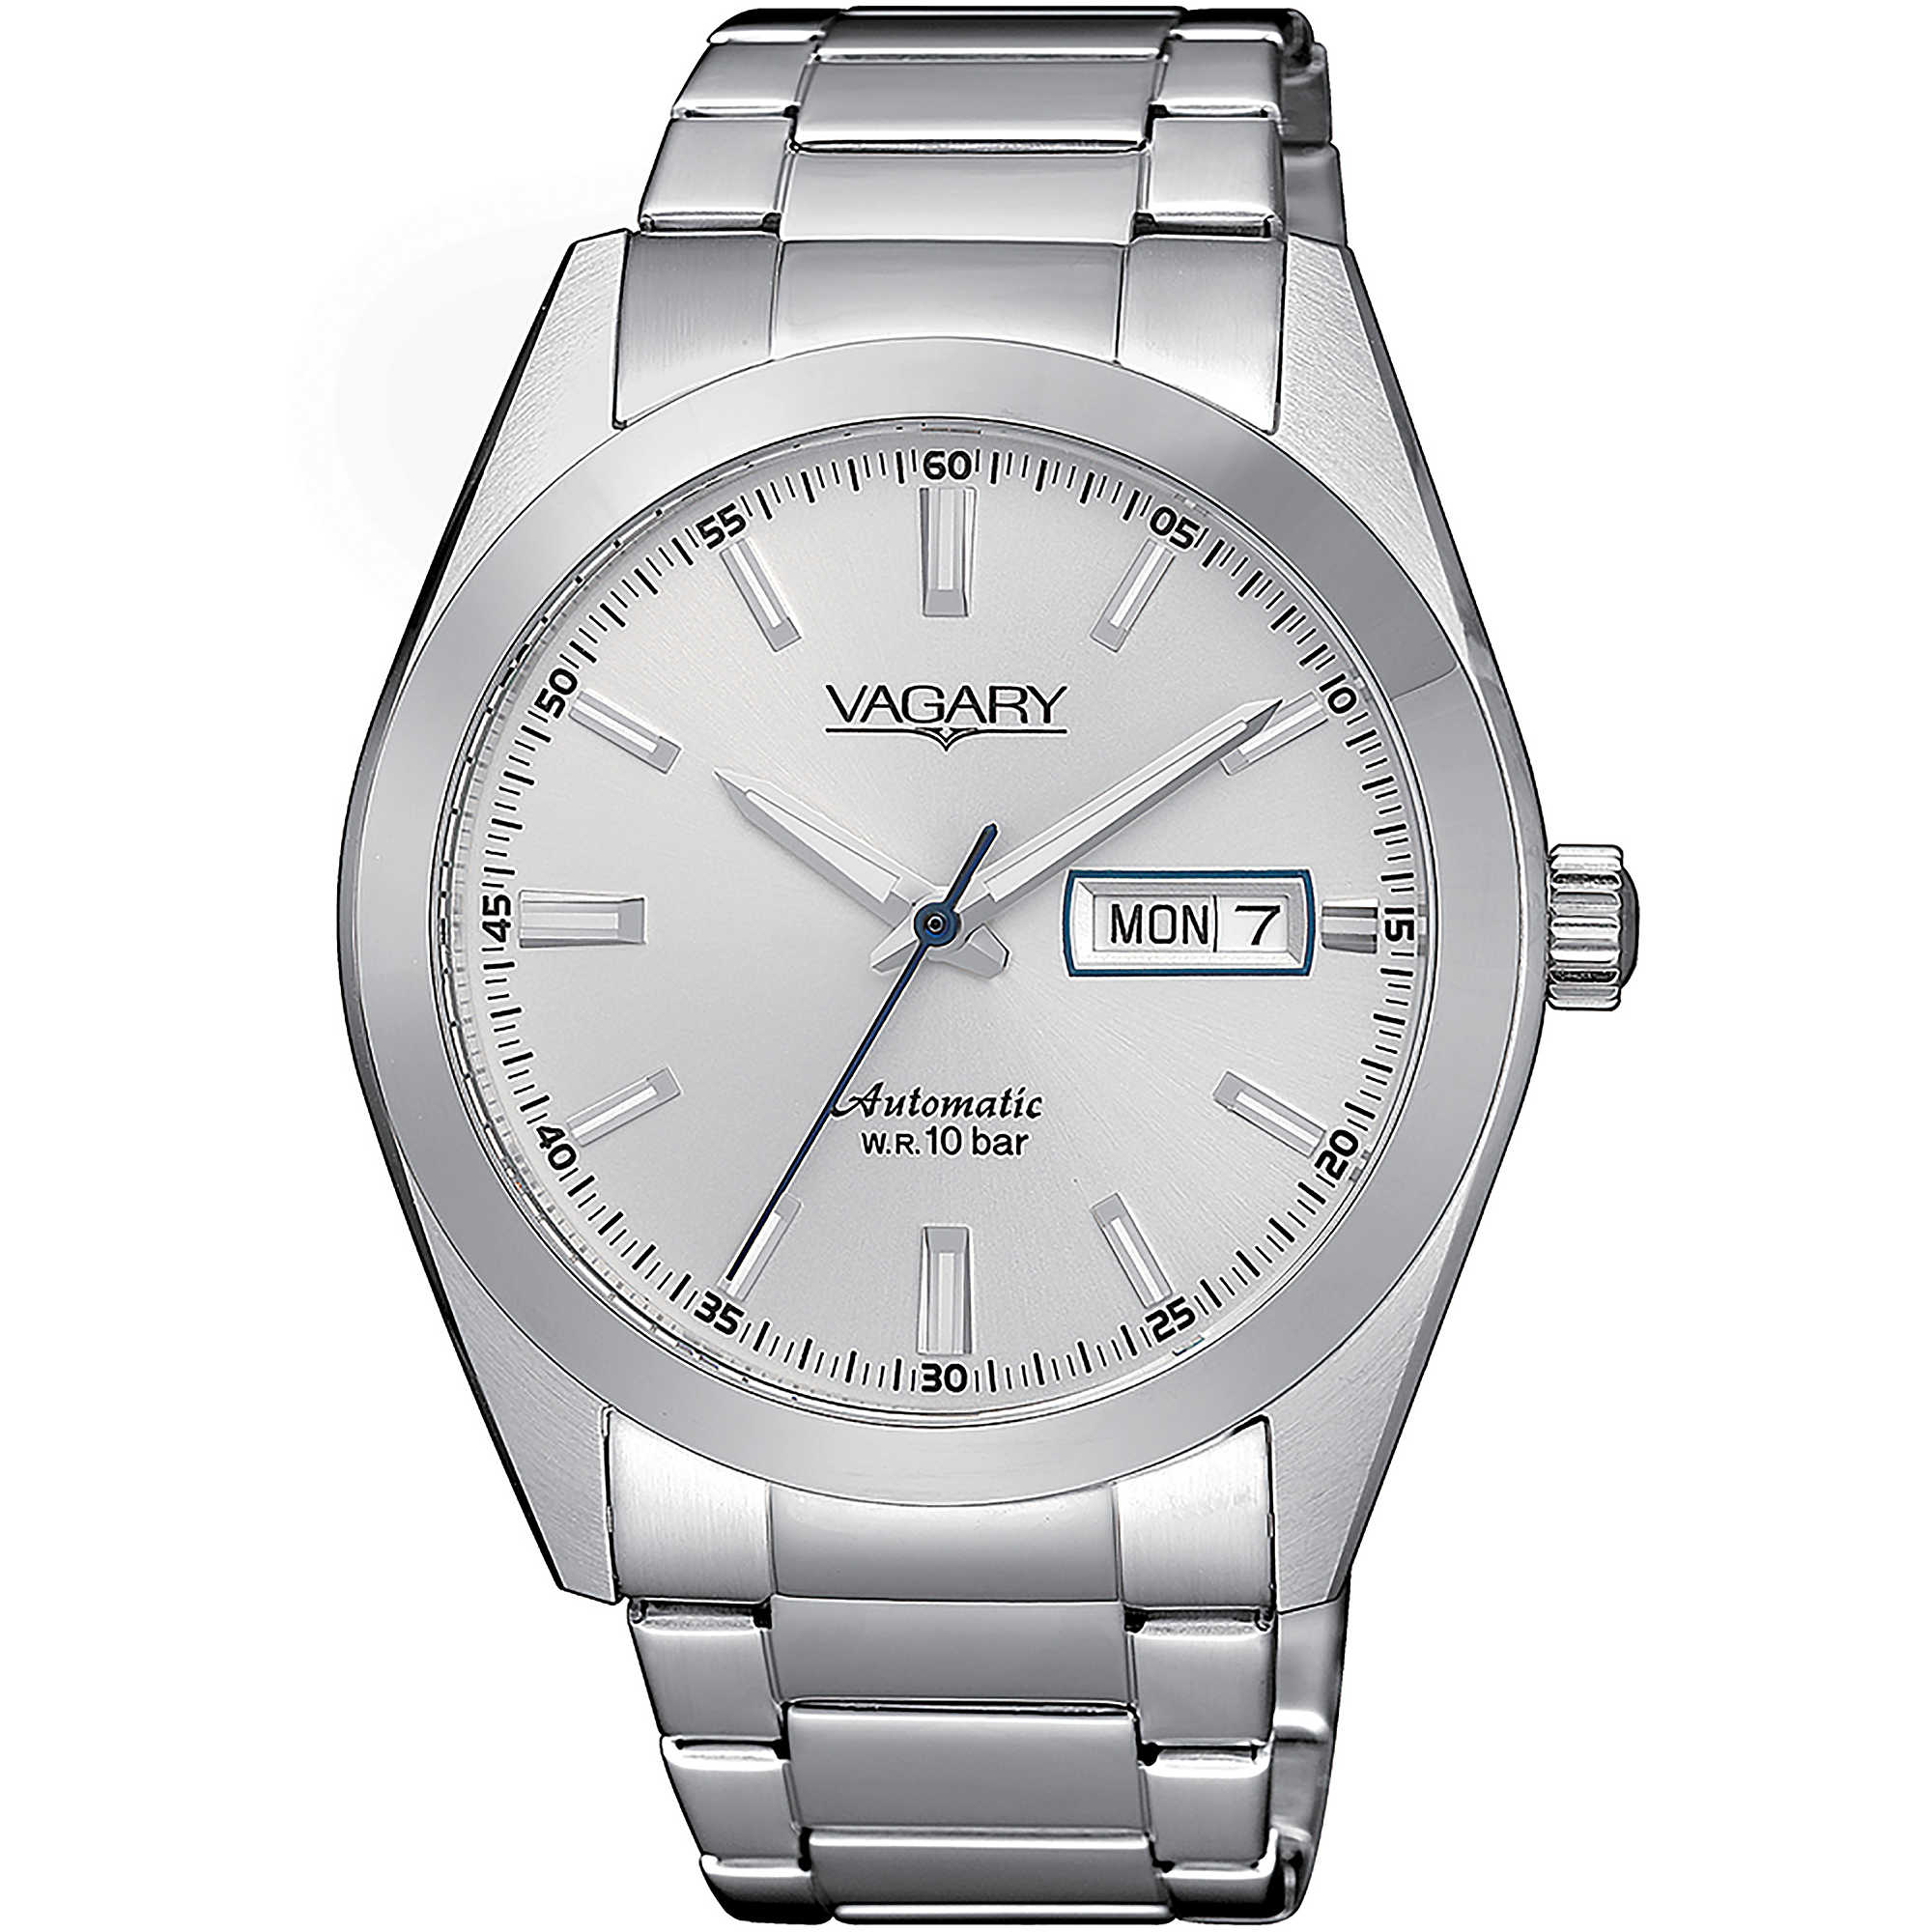 Vagary Watch by Citizen Gear Matic IX3-211-11